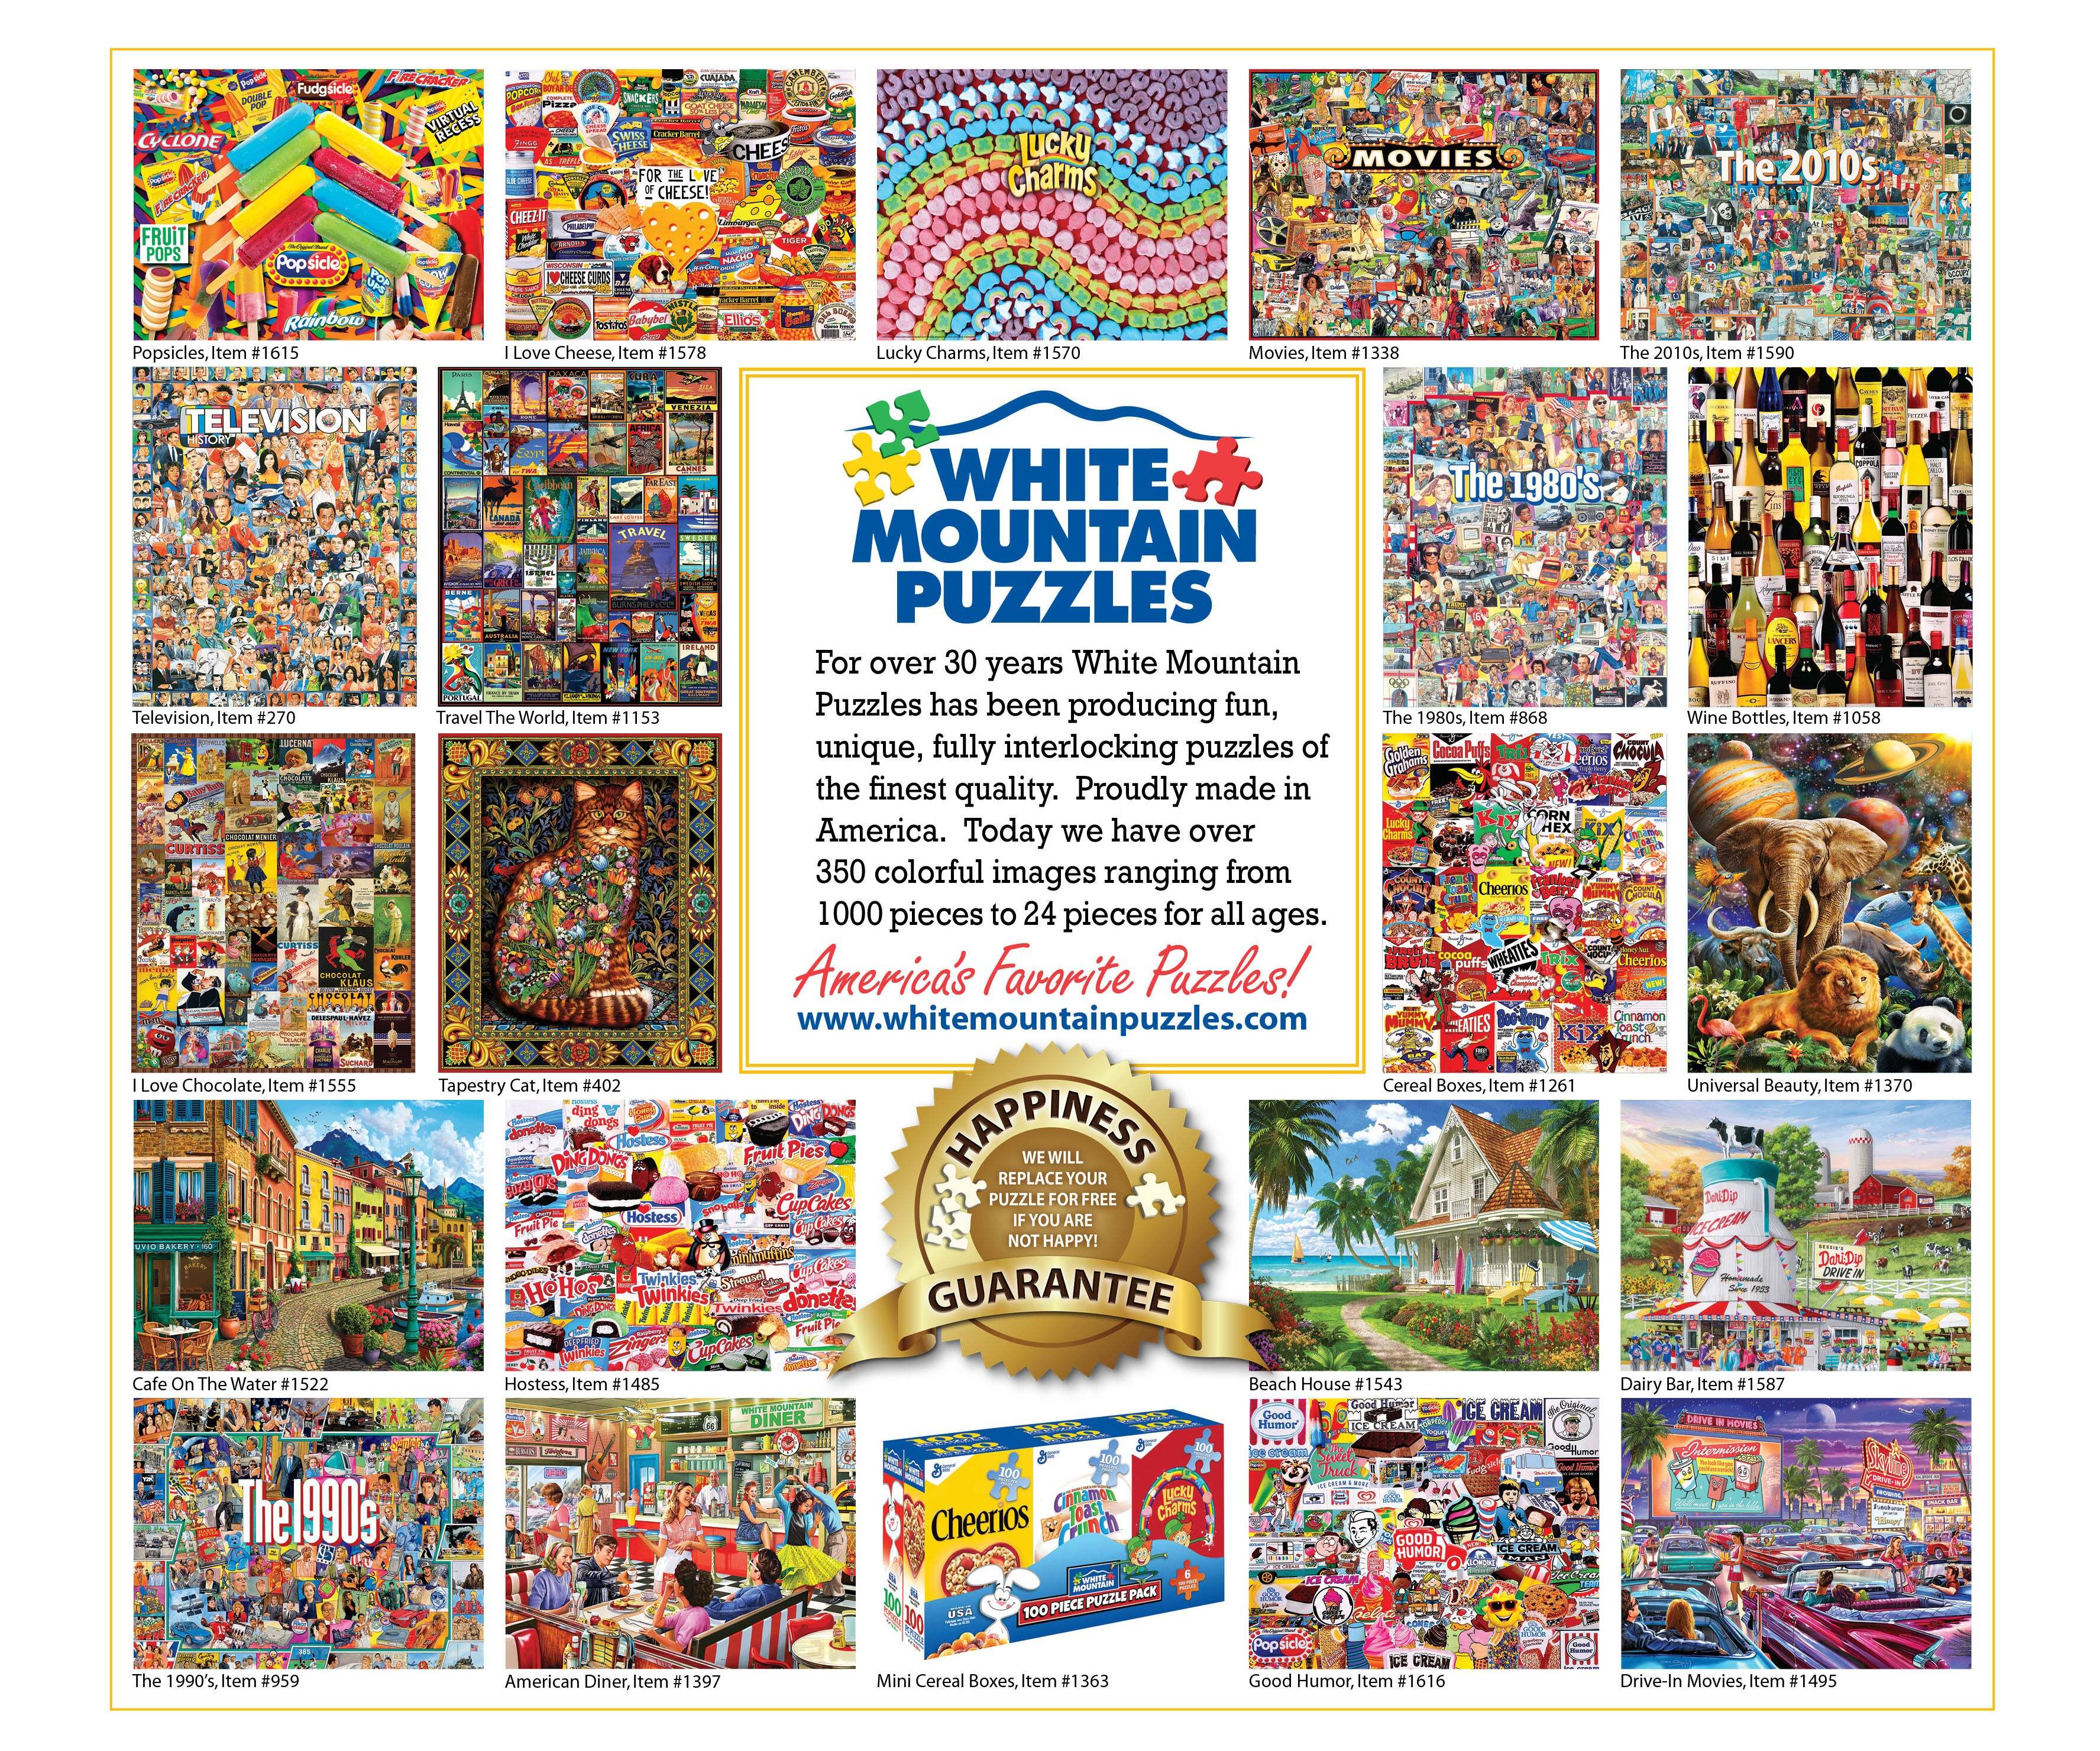 Happy Pets (1847pz) - 500 Piece Jigsaw Puzzle